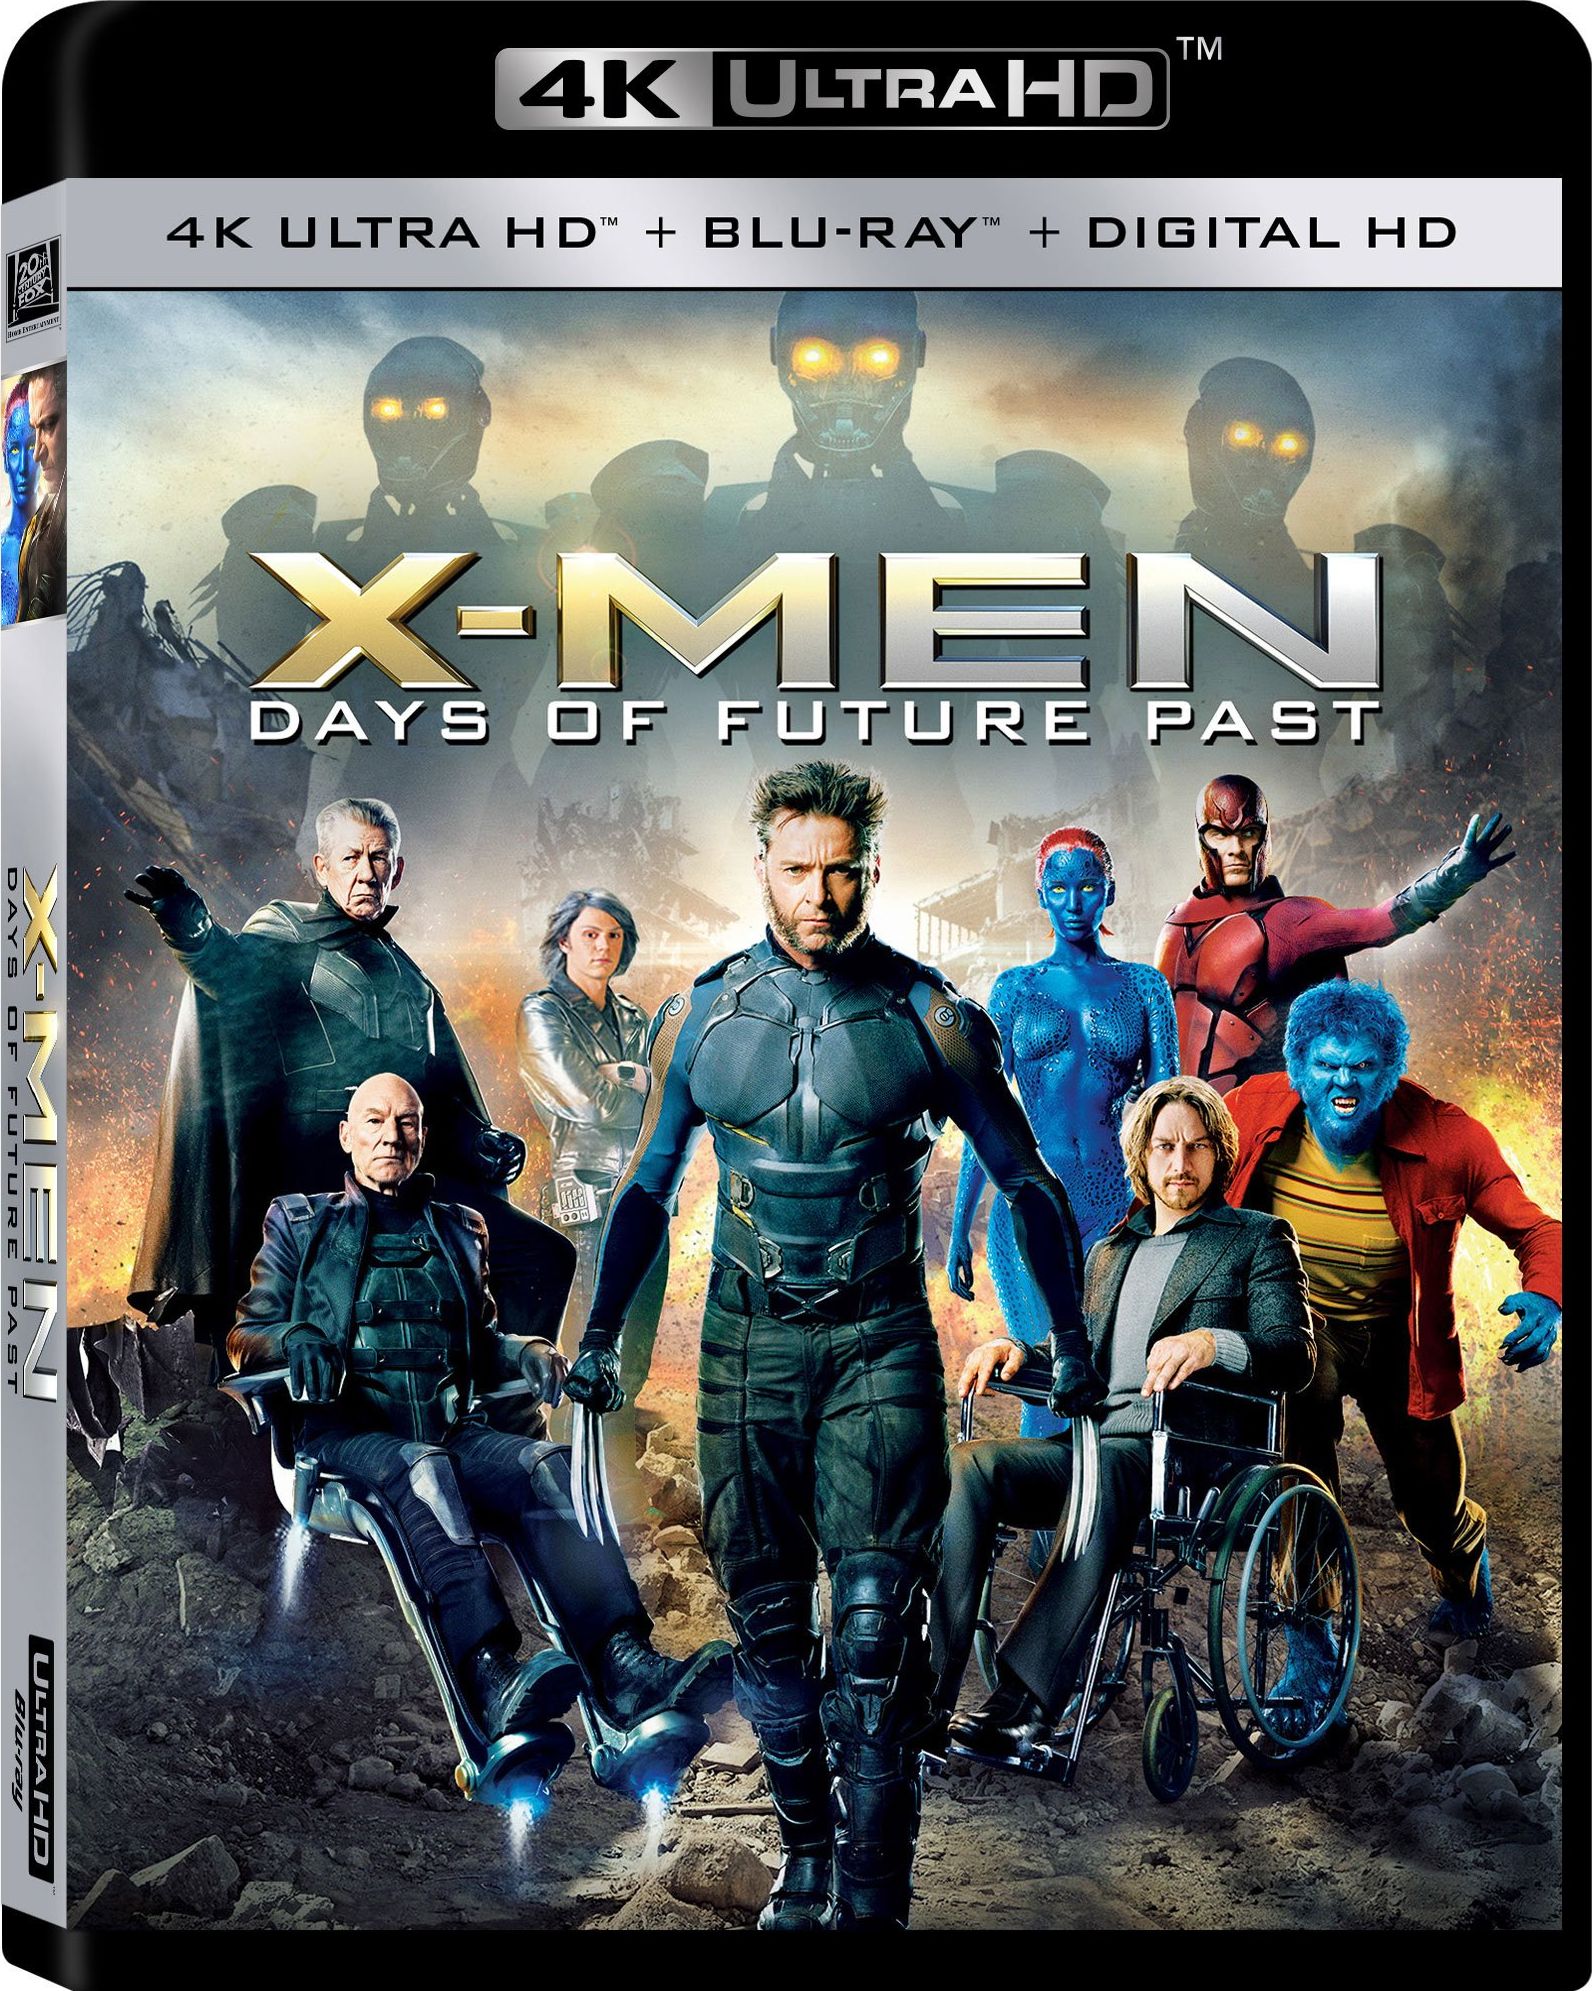 X-Men Days of Future Past 2014 - TORRENT 720p 1080p